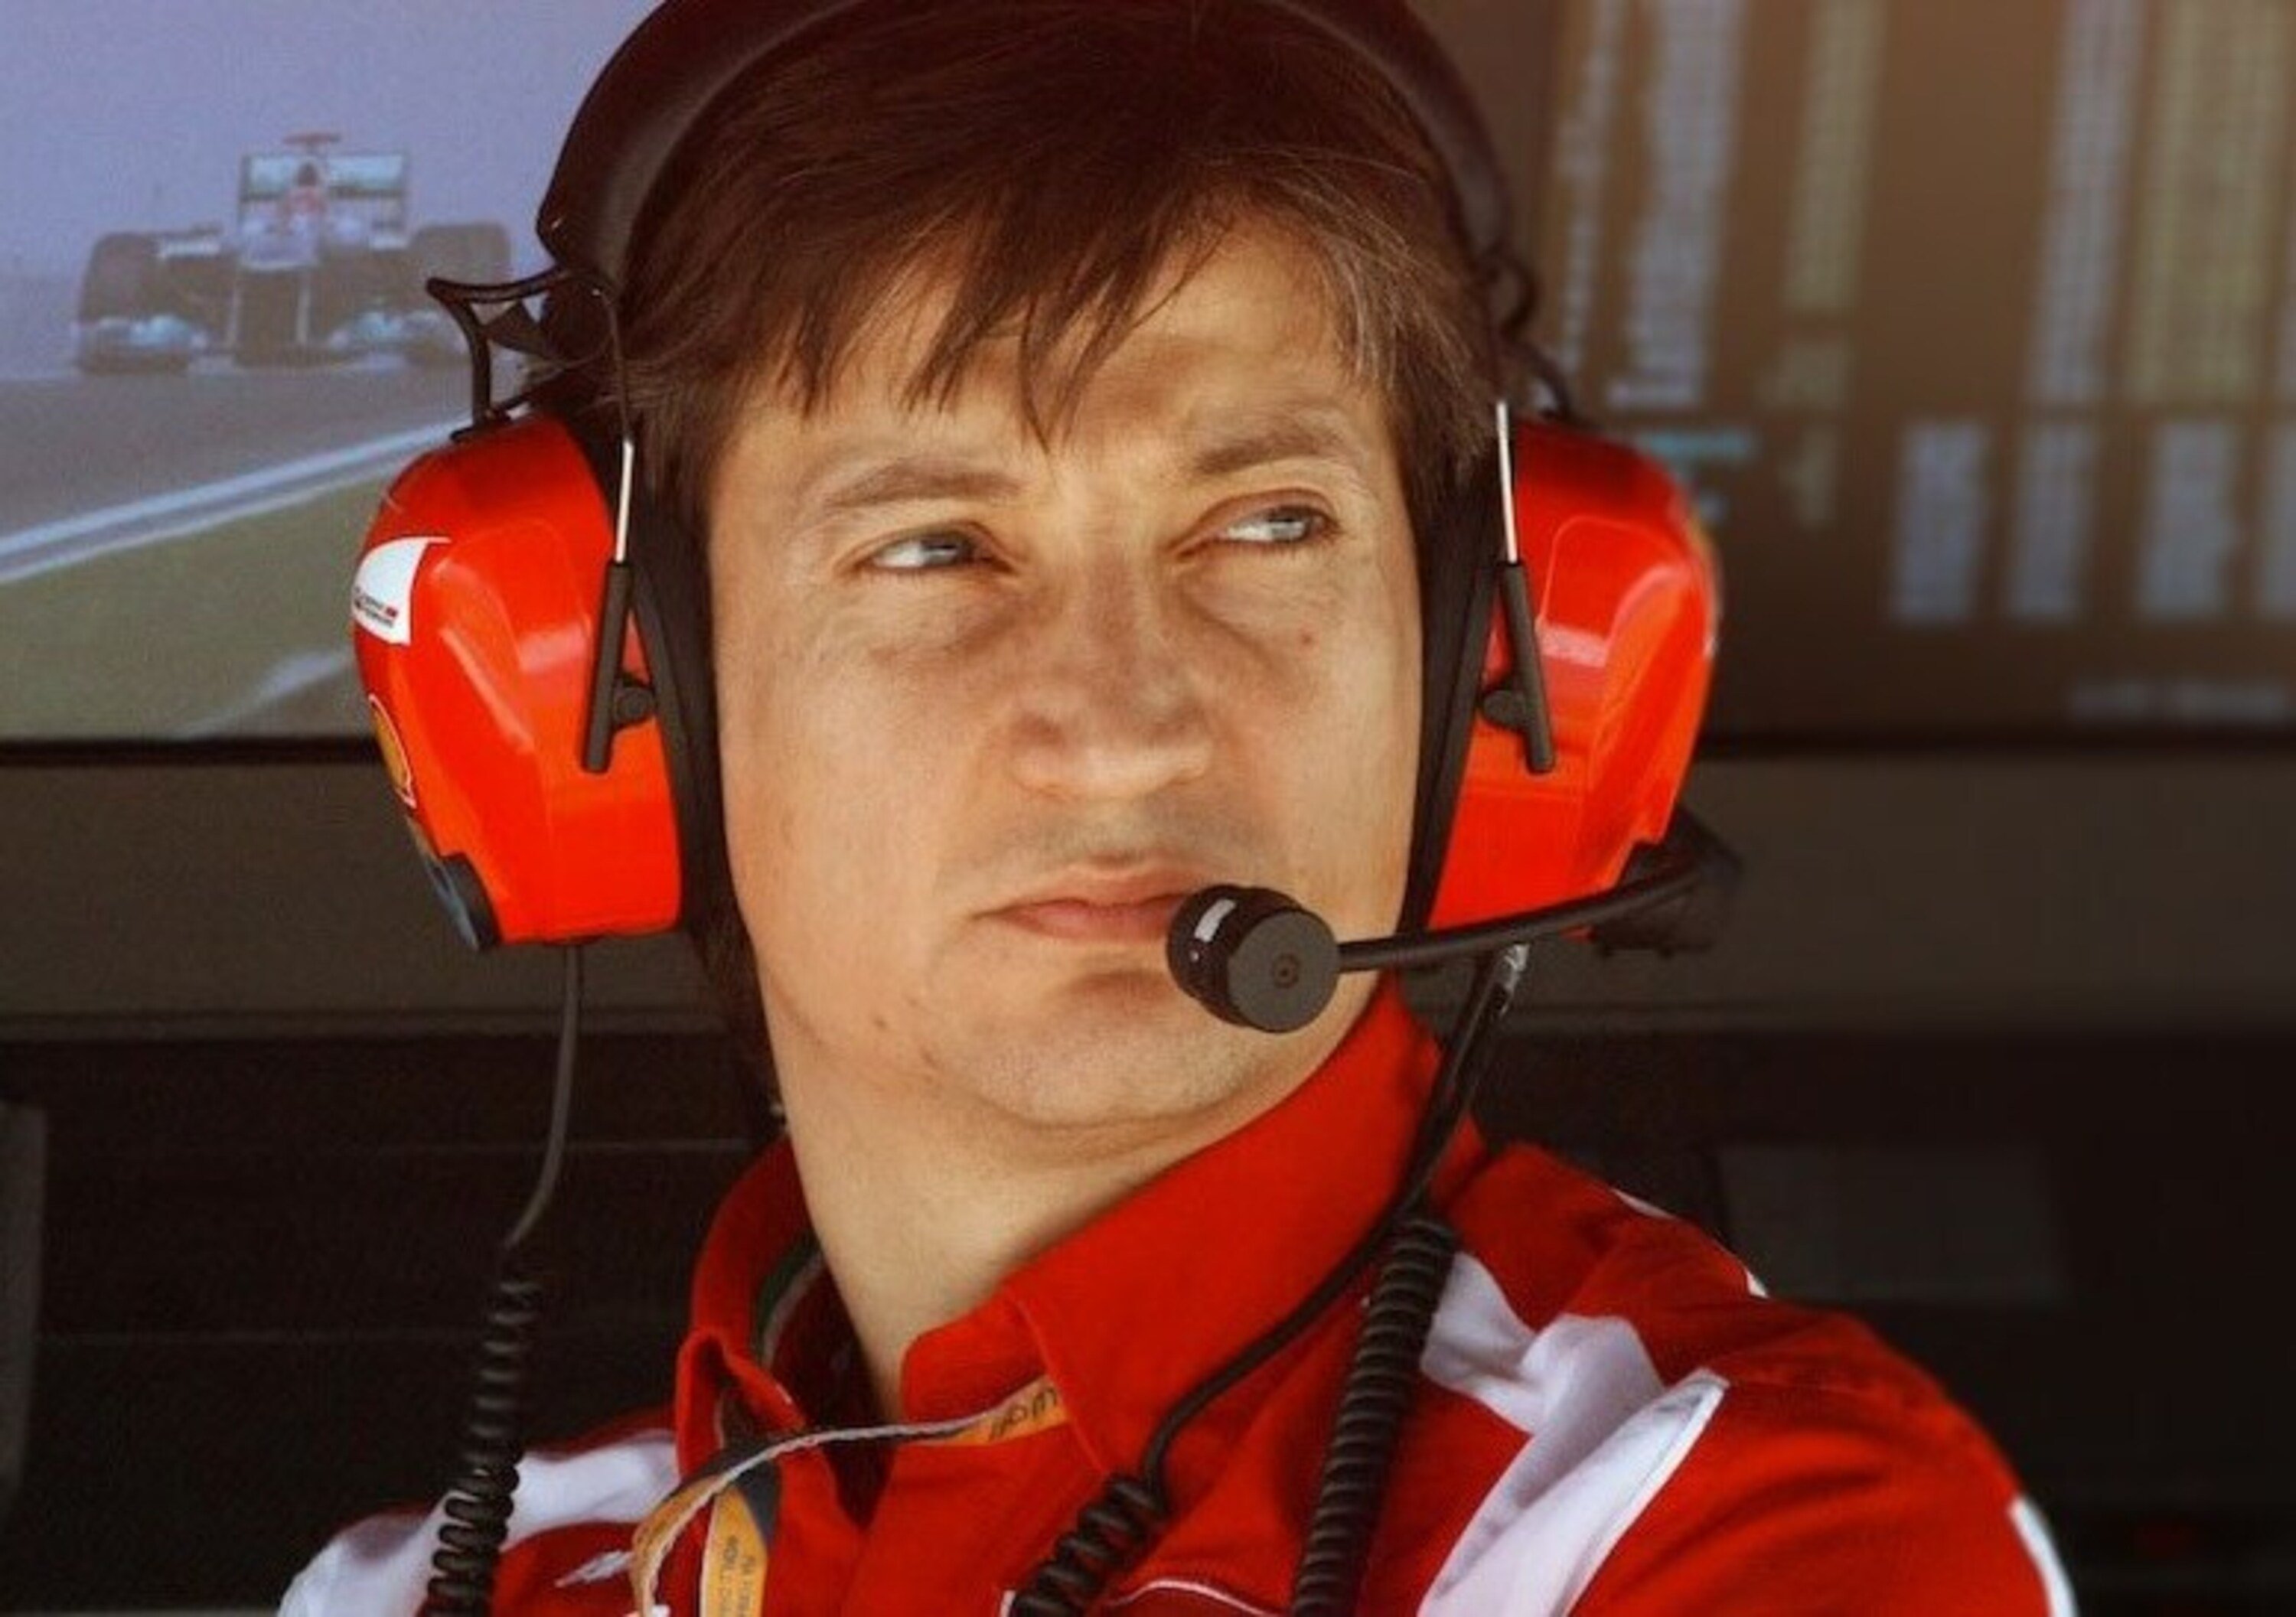 Giallo Ferrari: Massimo Rivola sospeso. No comment sulle motivazioni